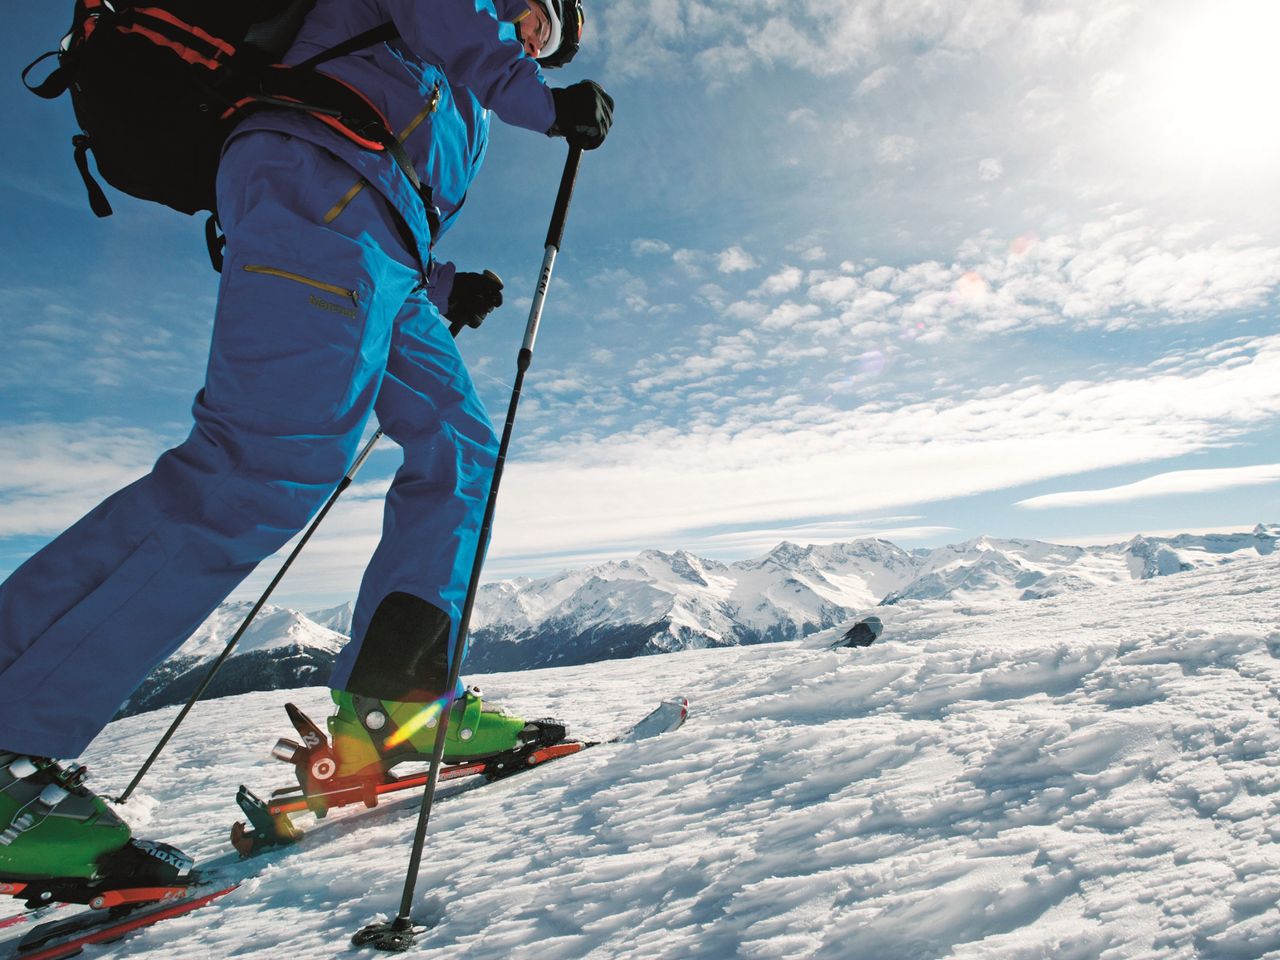 Bring deine Ski auf Touren!